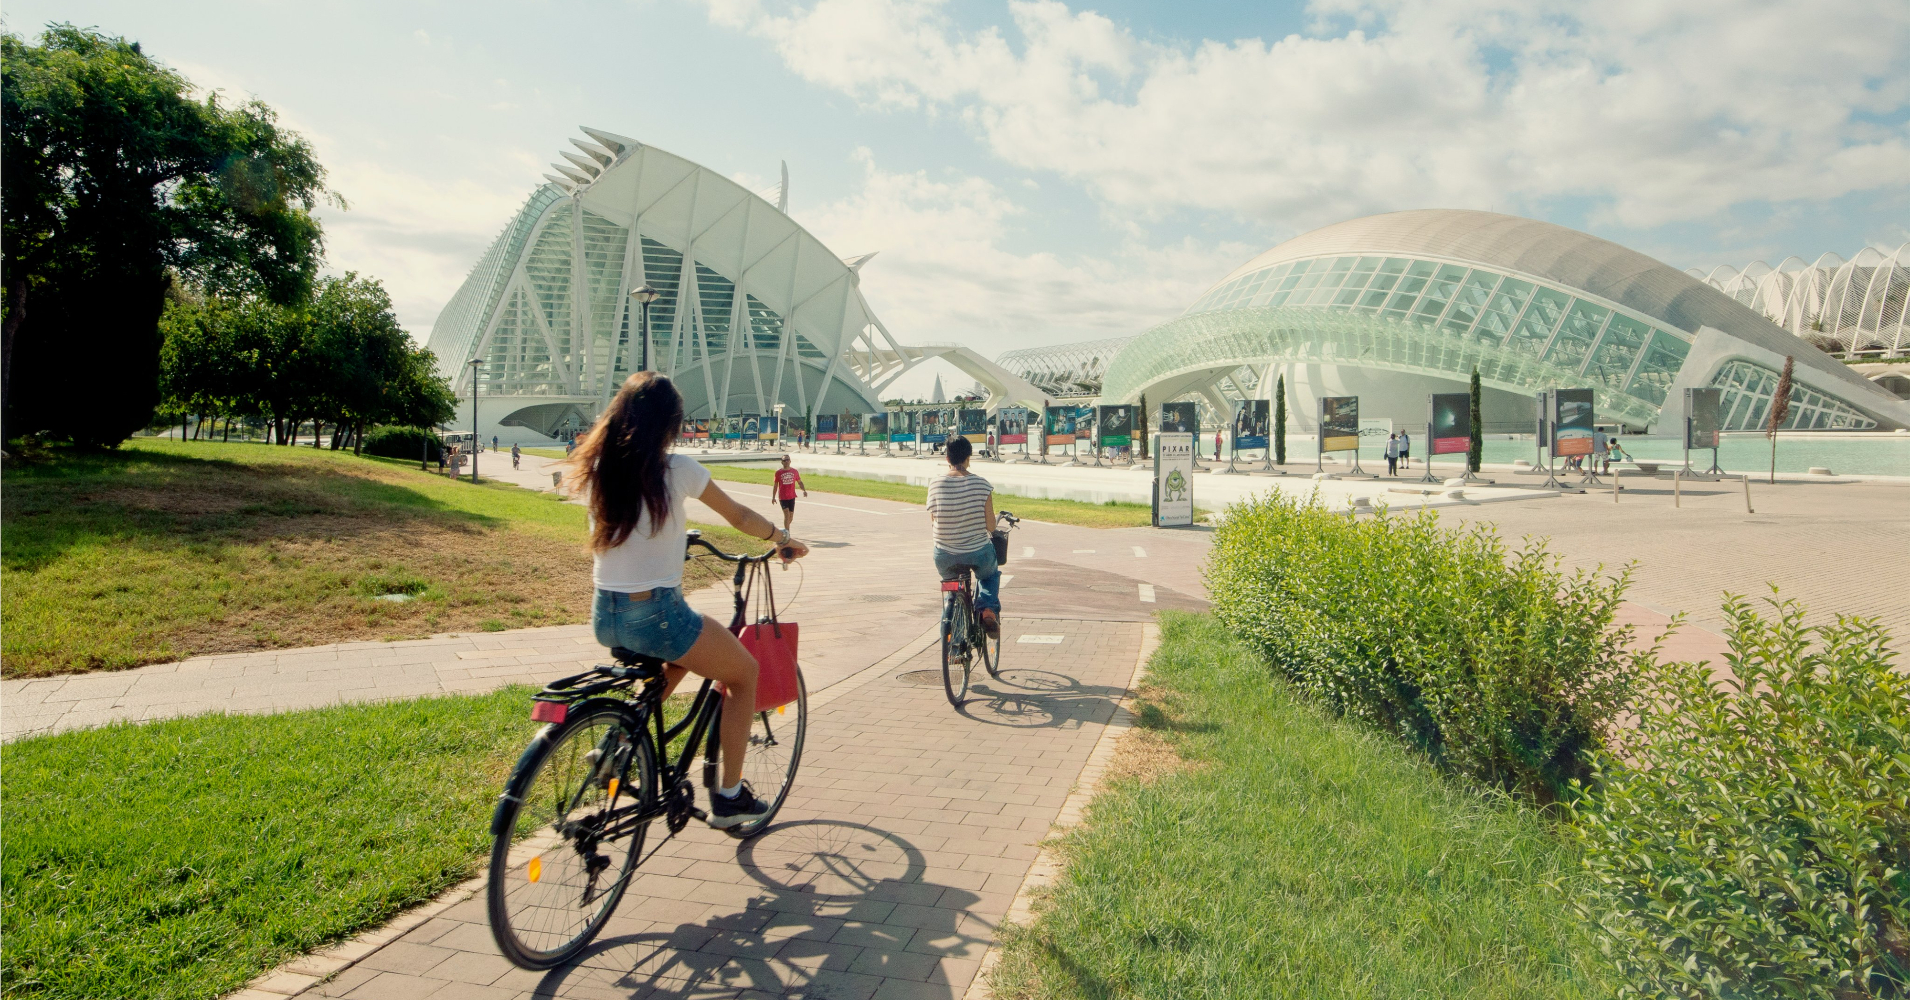 【#Energy】用路燈充電、建設綠建築且全面發展再生能！瓦倫西亞打造智能碳中和城市將可持續機能結合淨零旅遊